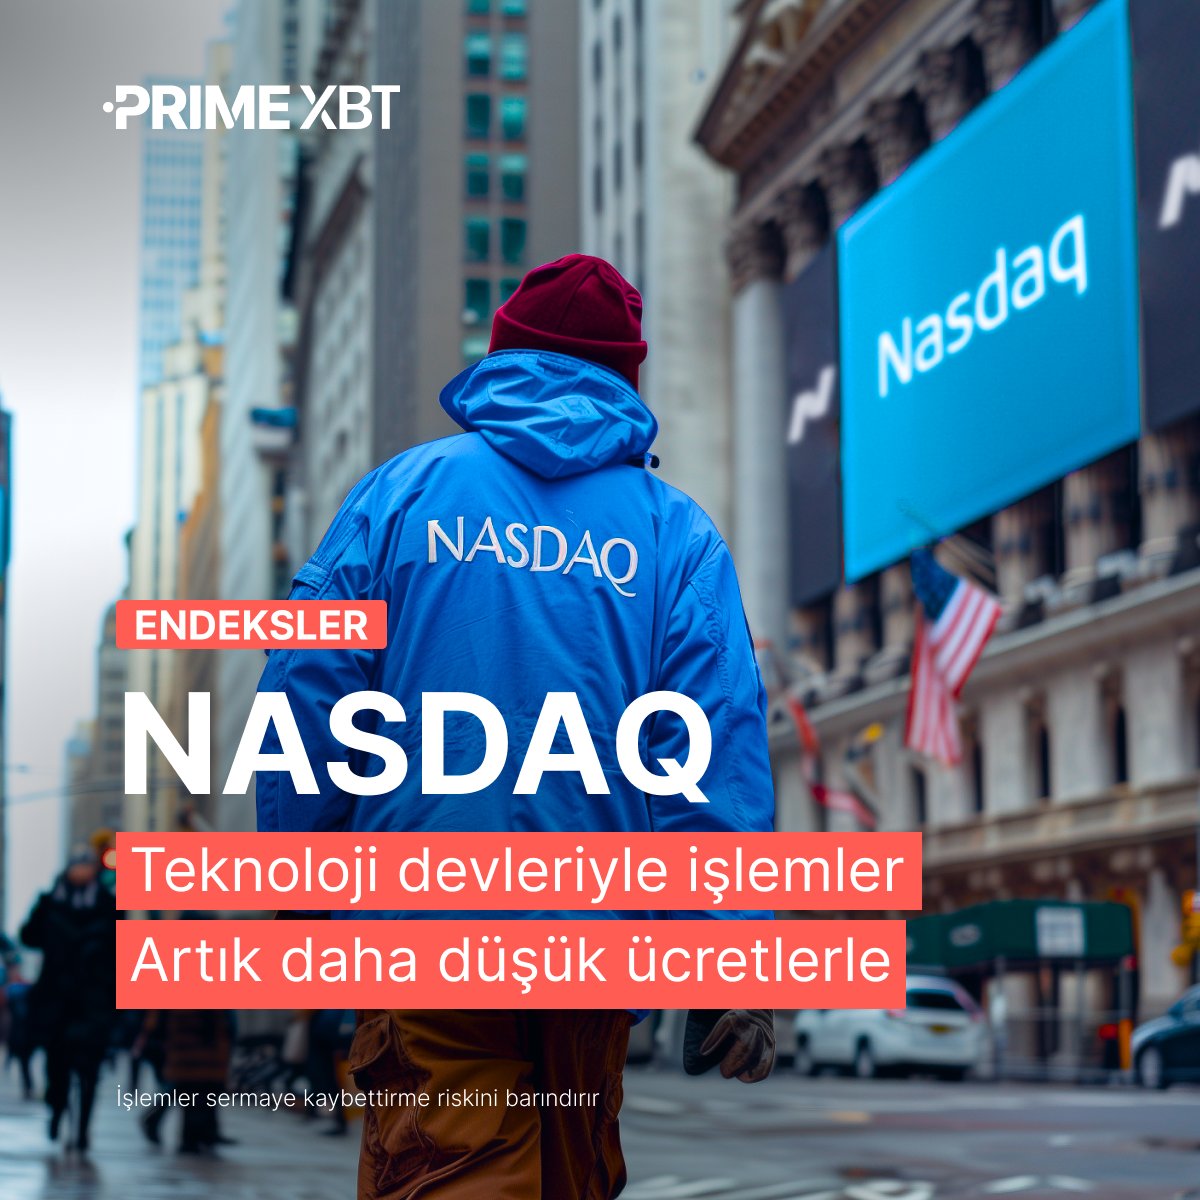 🖥 #NASDAQ100'de işlem yaparak teknolojik yeniliklerden kazanın İndirimli gecelik ücretlerden yararlanın ve dünyanın önde gelen teknoloji şirketleriyle iş birliği yapın 🤝 ⚡️ Portföyünüzü güçlendirin: u.primexbt-tr.pro/4bON5Kr #PrimeXBT #NASDAQ #Teknoloji